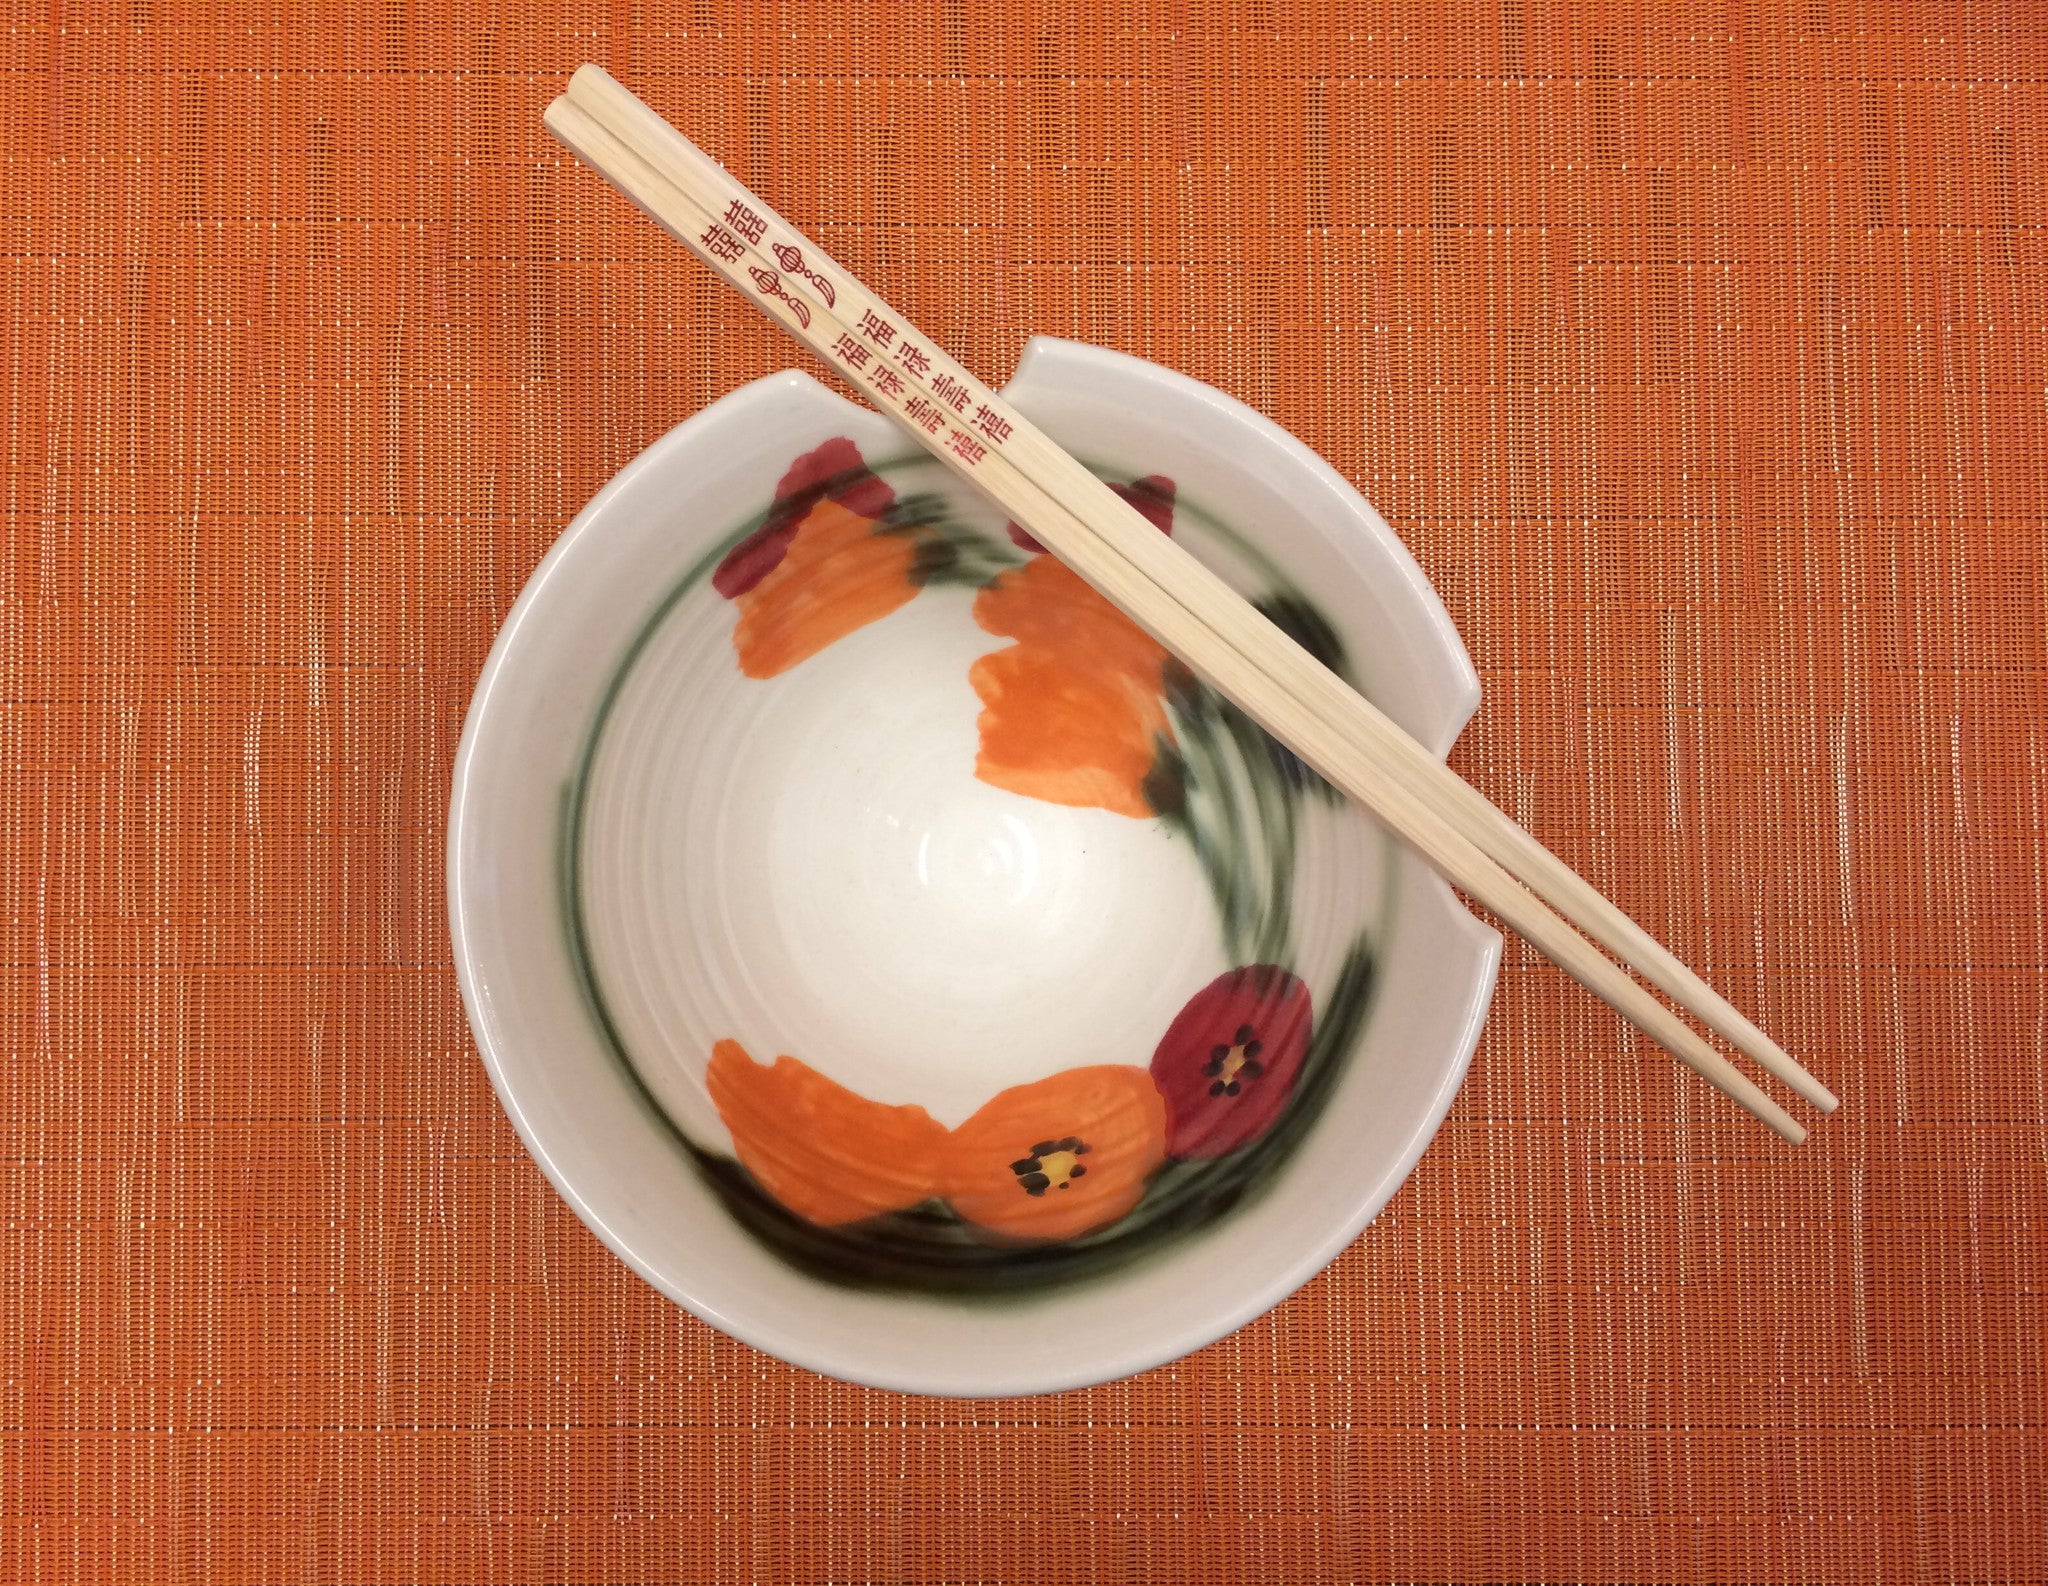 handmade ceramic bowl with chopsticks